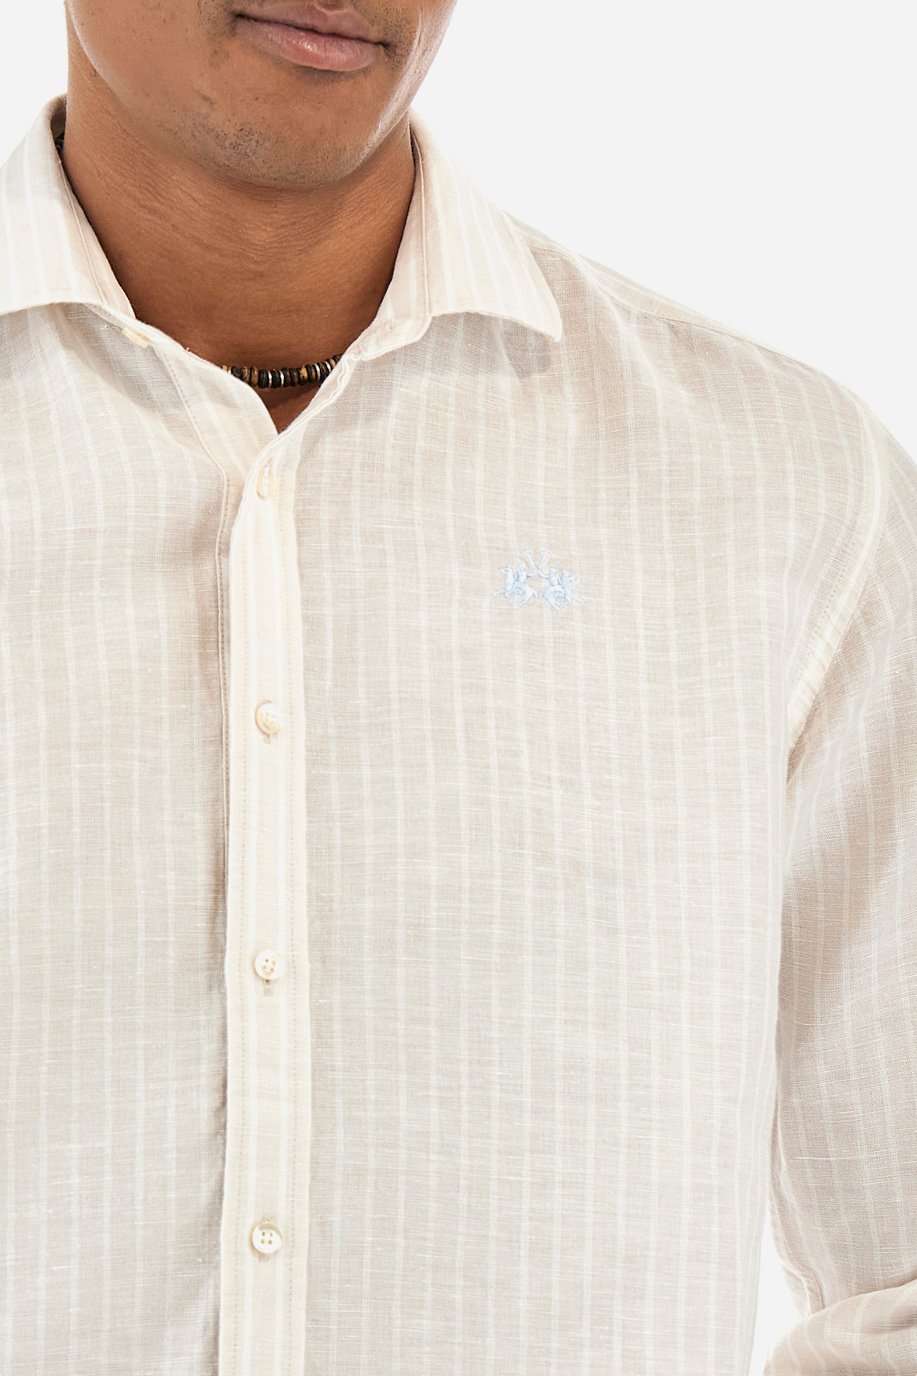 Chemise à rayures en coton et lin - Innocent - Chemises | La Martina - Official Online Shop